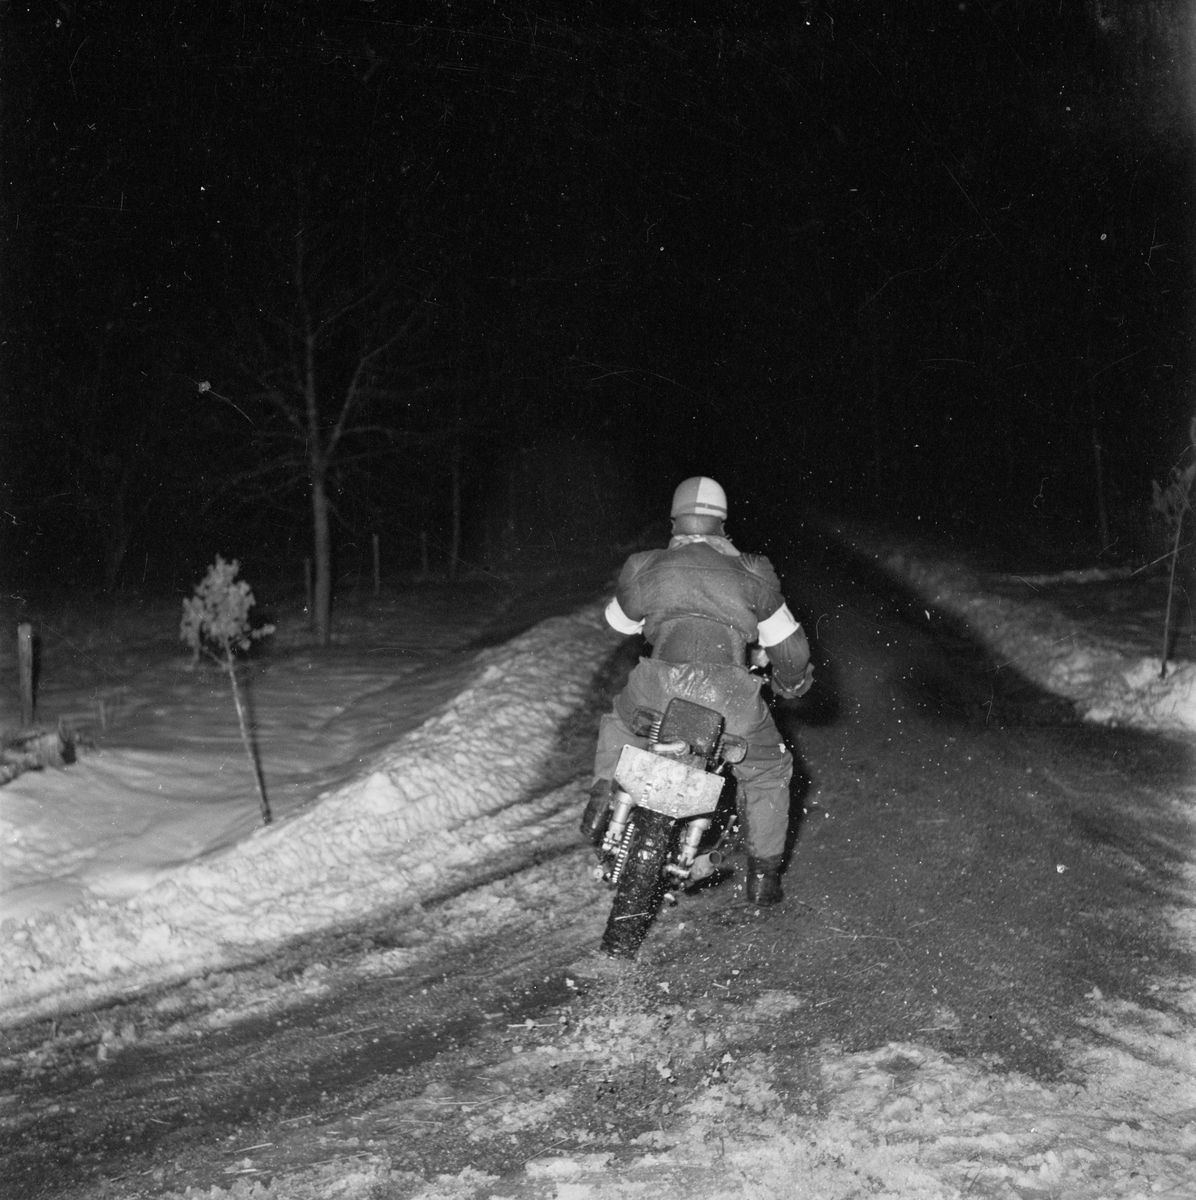 Motorcykeltävling, SMK, Uppsala 1952